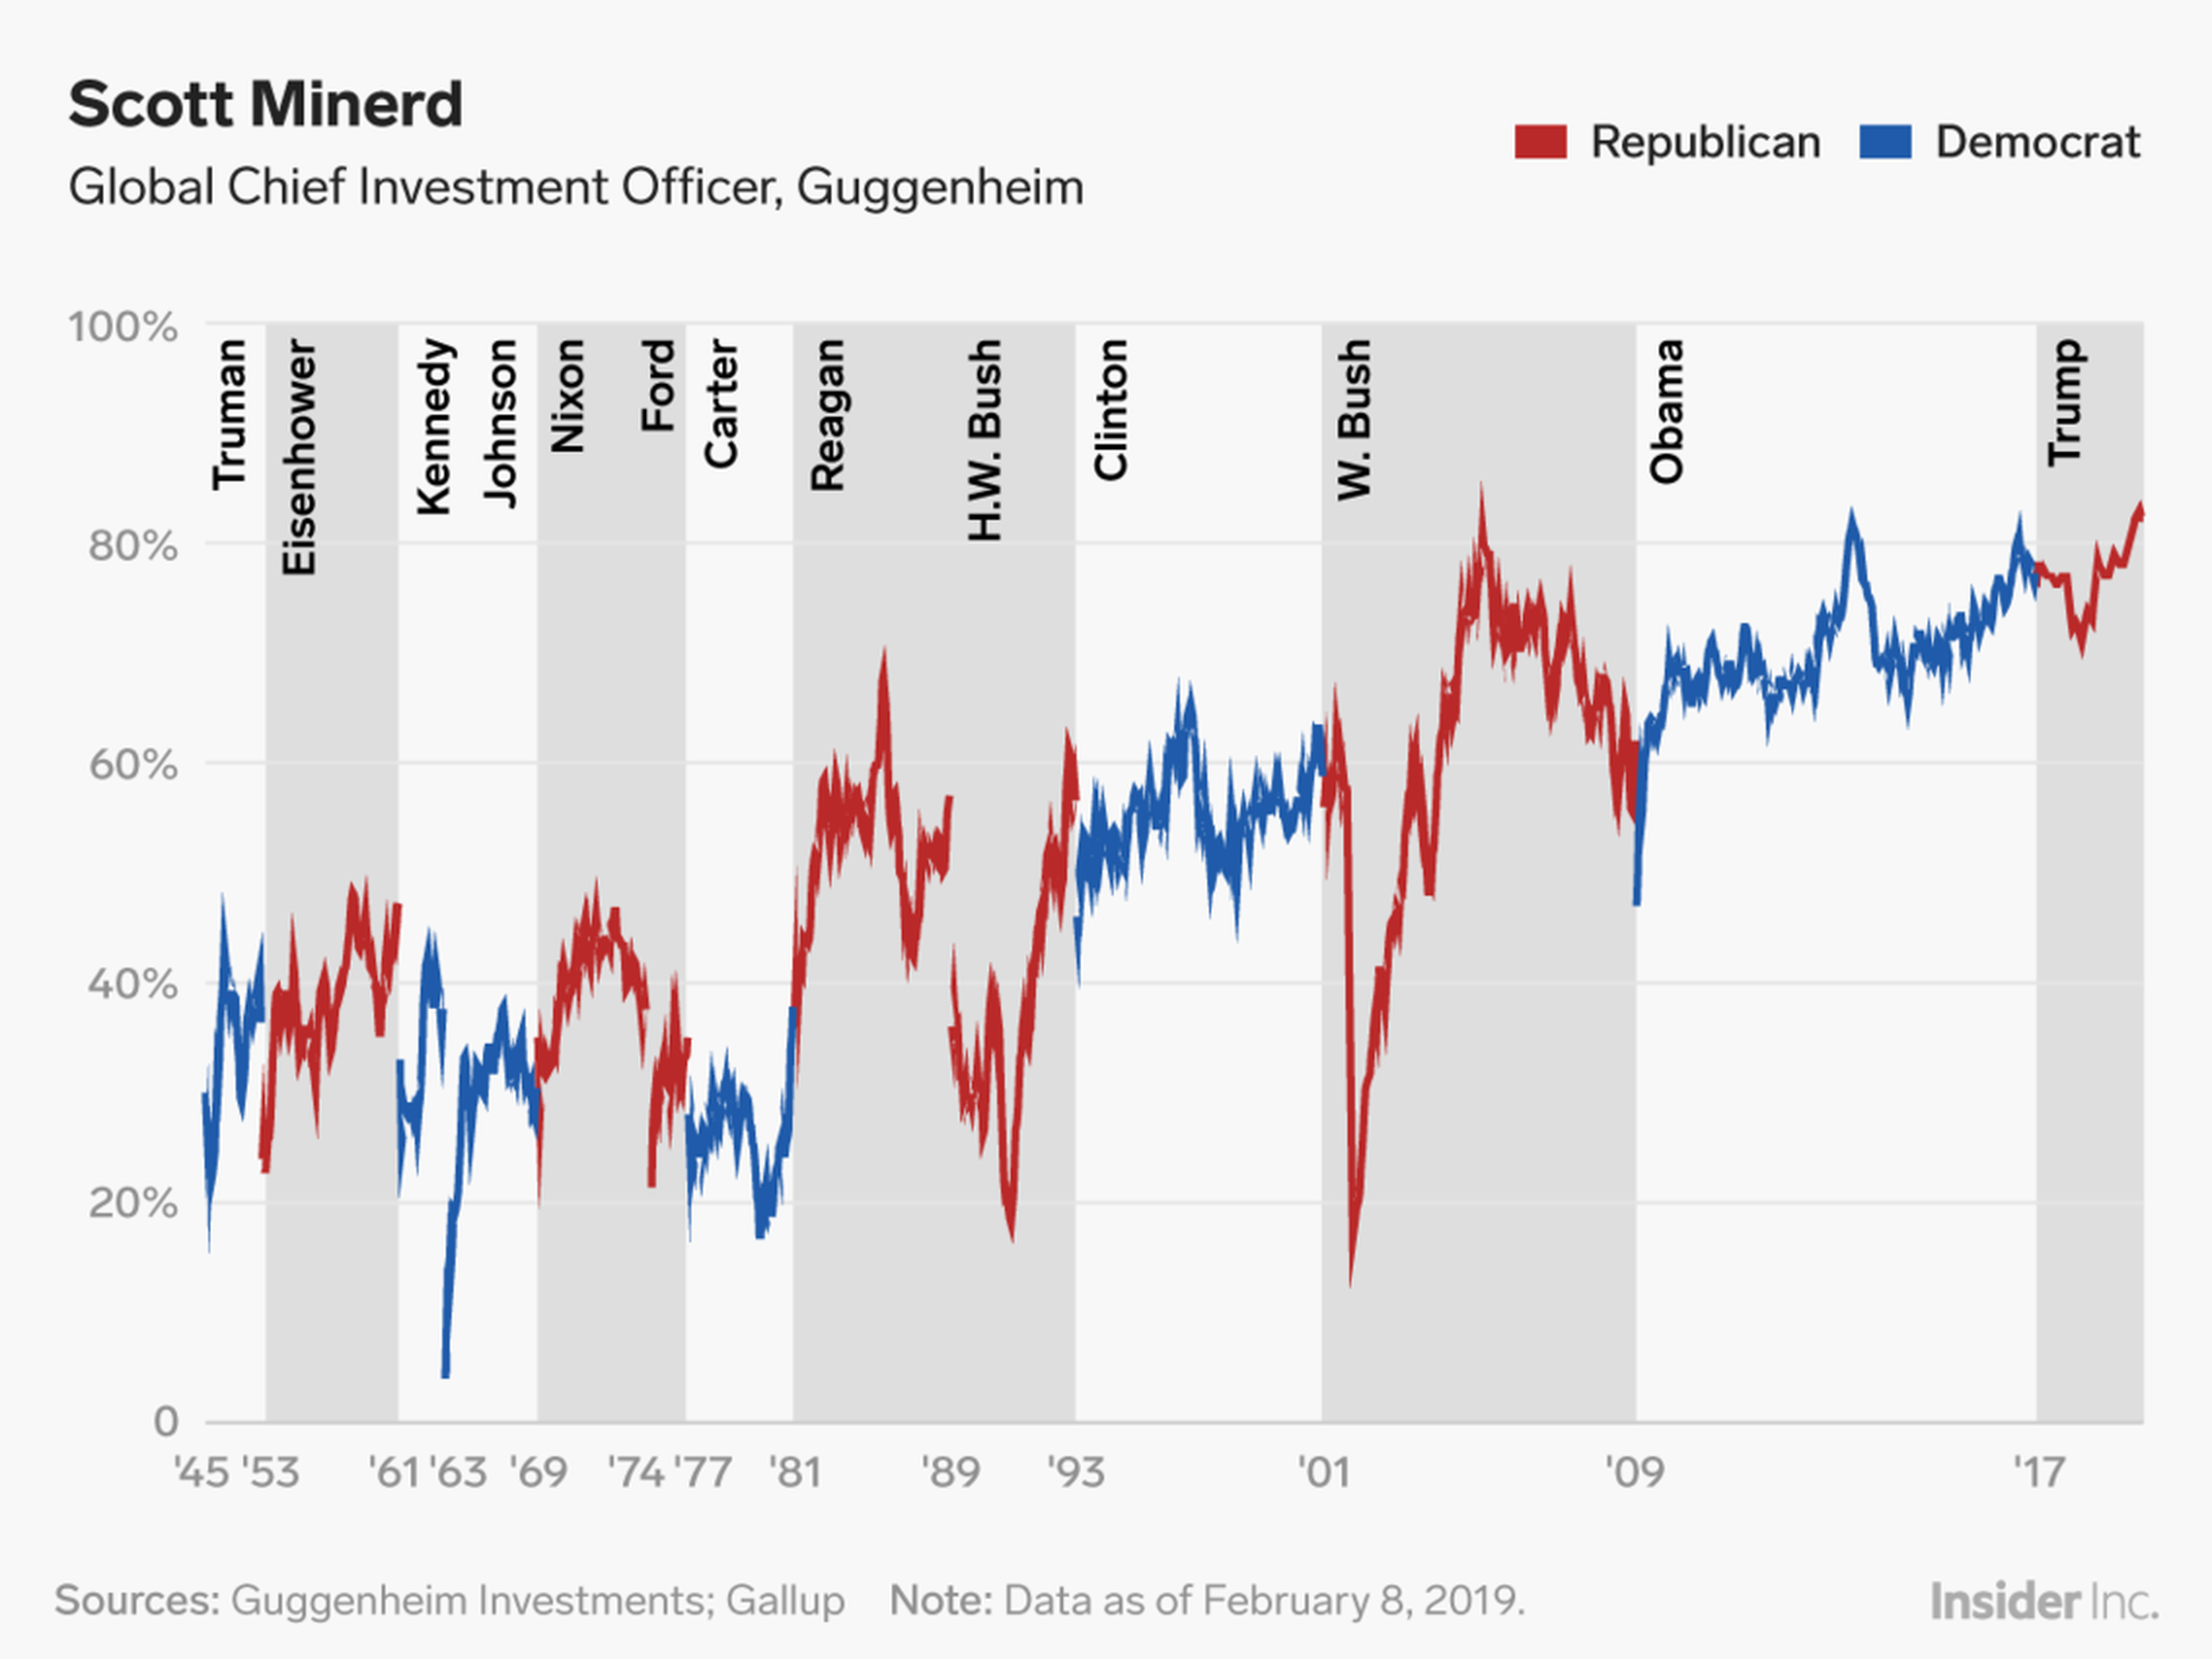 La brecha entre el índice de aprobación del presidente entre los republicanos y los demócratas se encuentra en un nivel histórico